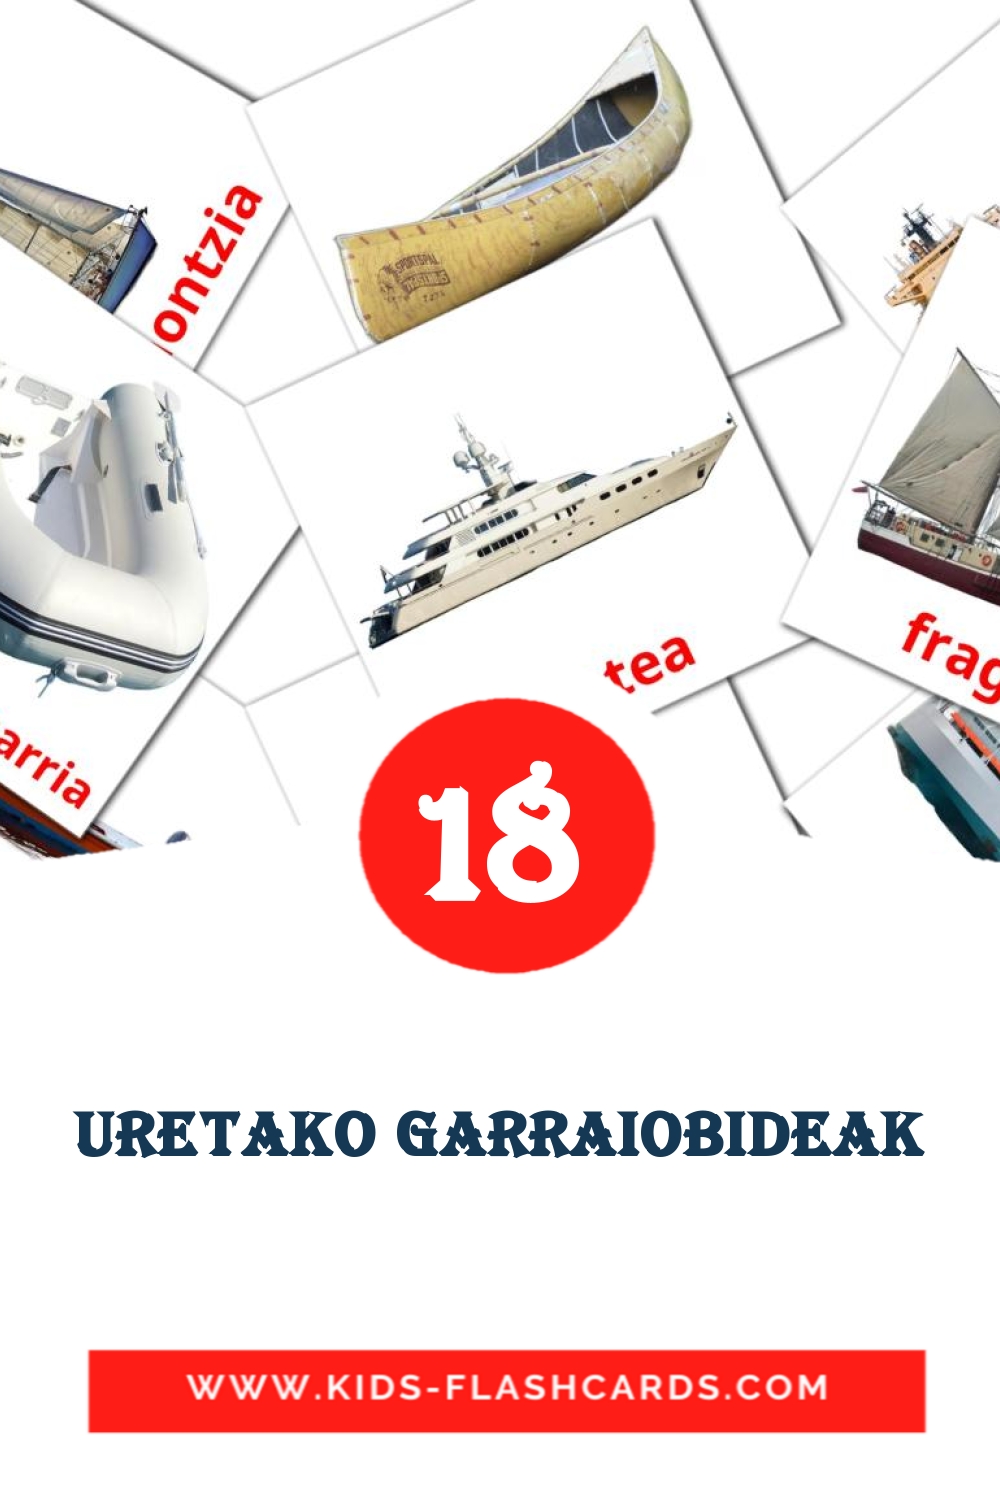 18 Uretako garraiobideak Picture Cards for Kindergarden in basque